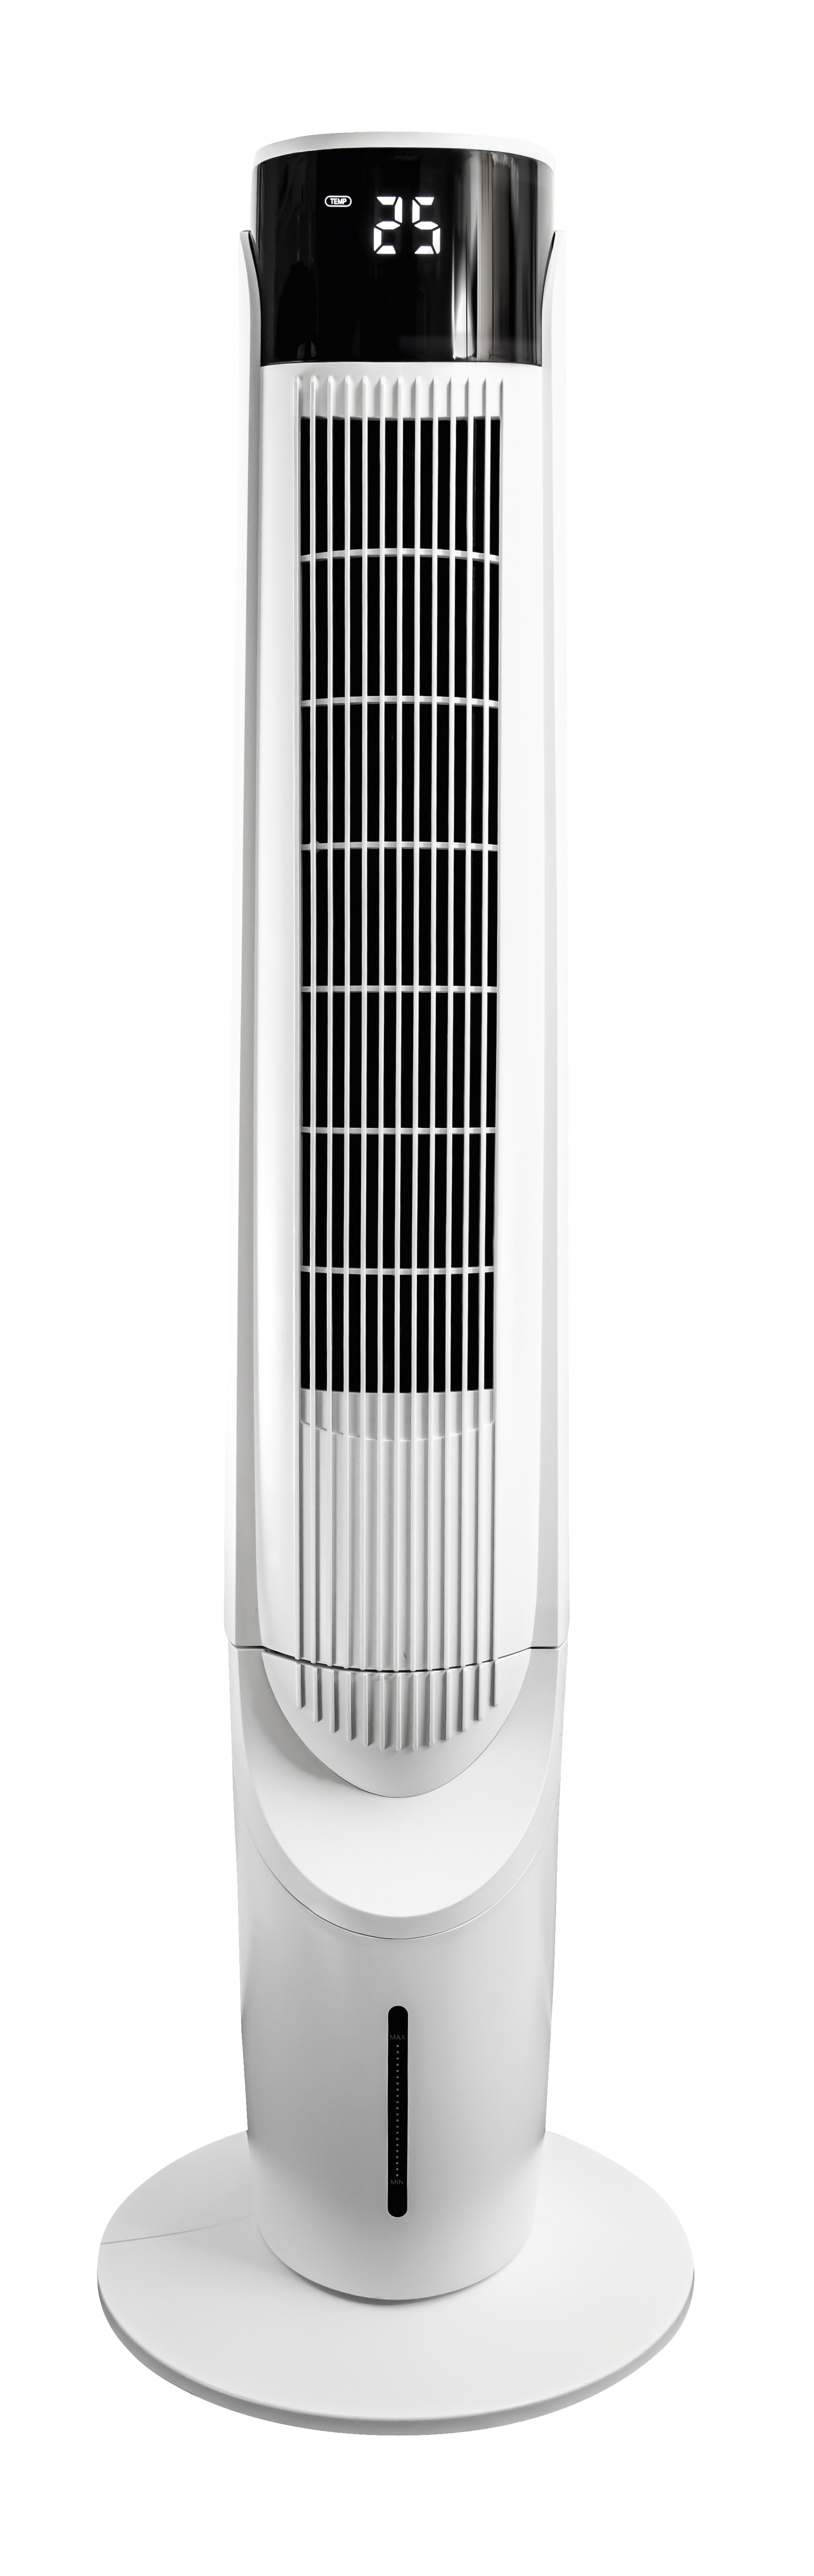 und KOENIC 602722 KTFC Turmventilator Weiß (60 Watt) Luftkühler